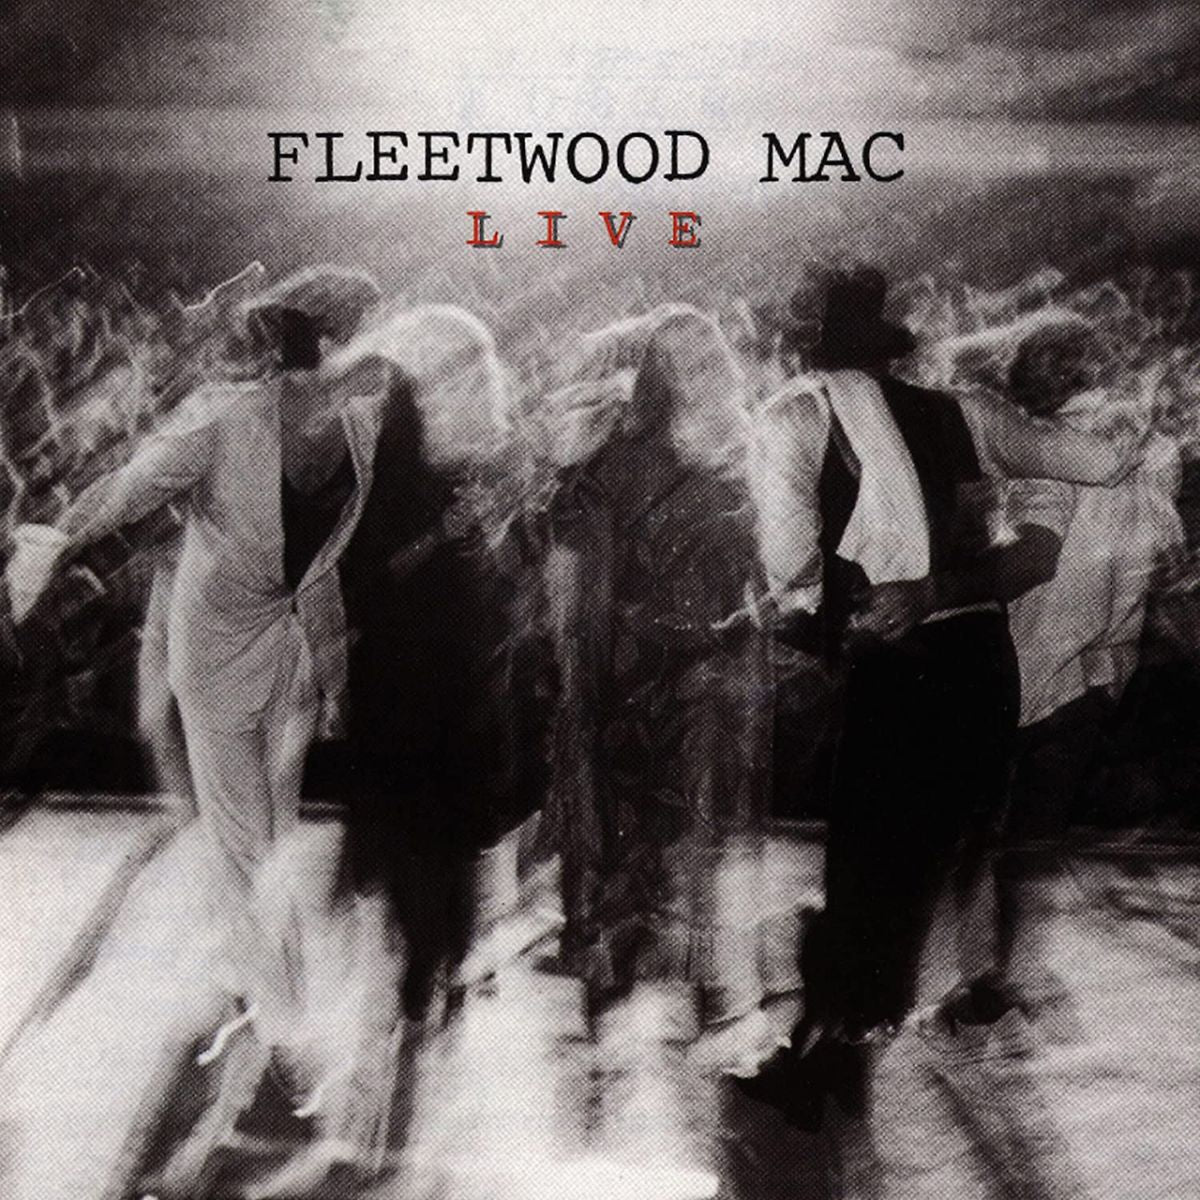 FLEETWOOD MAC - Fleetwood Mac Live (Remastered) - 3CD Set